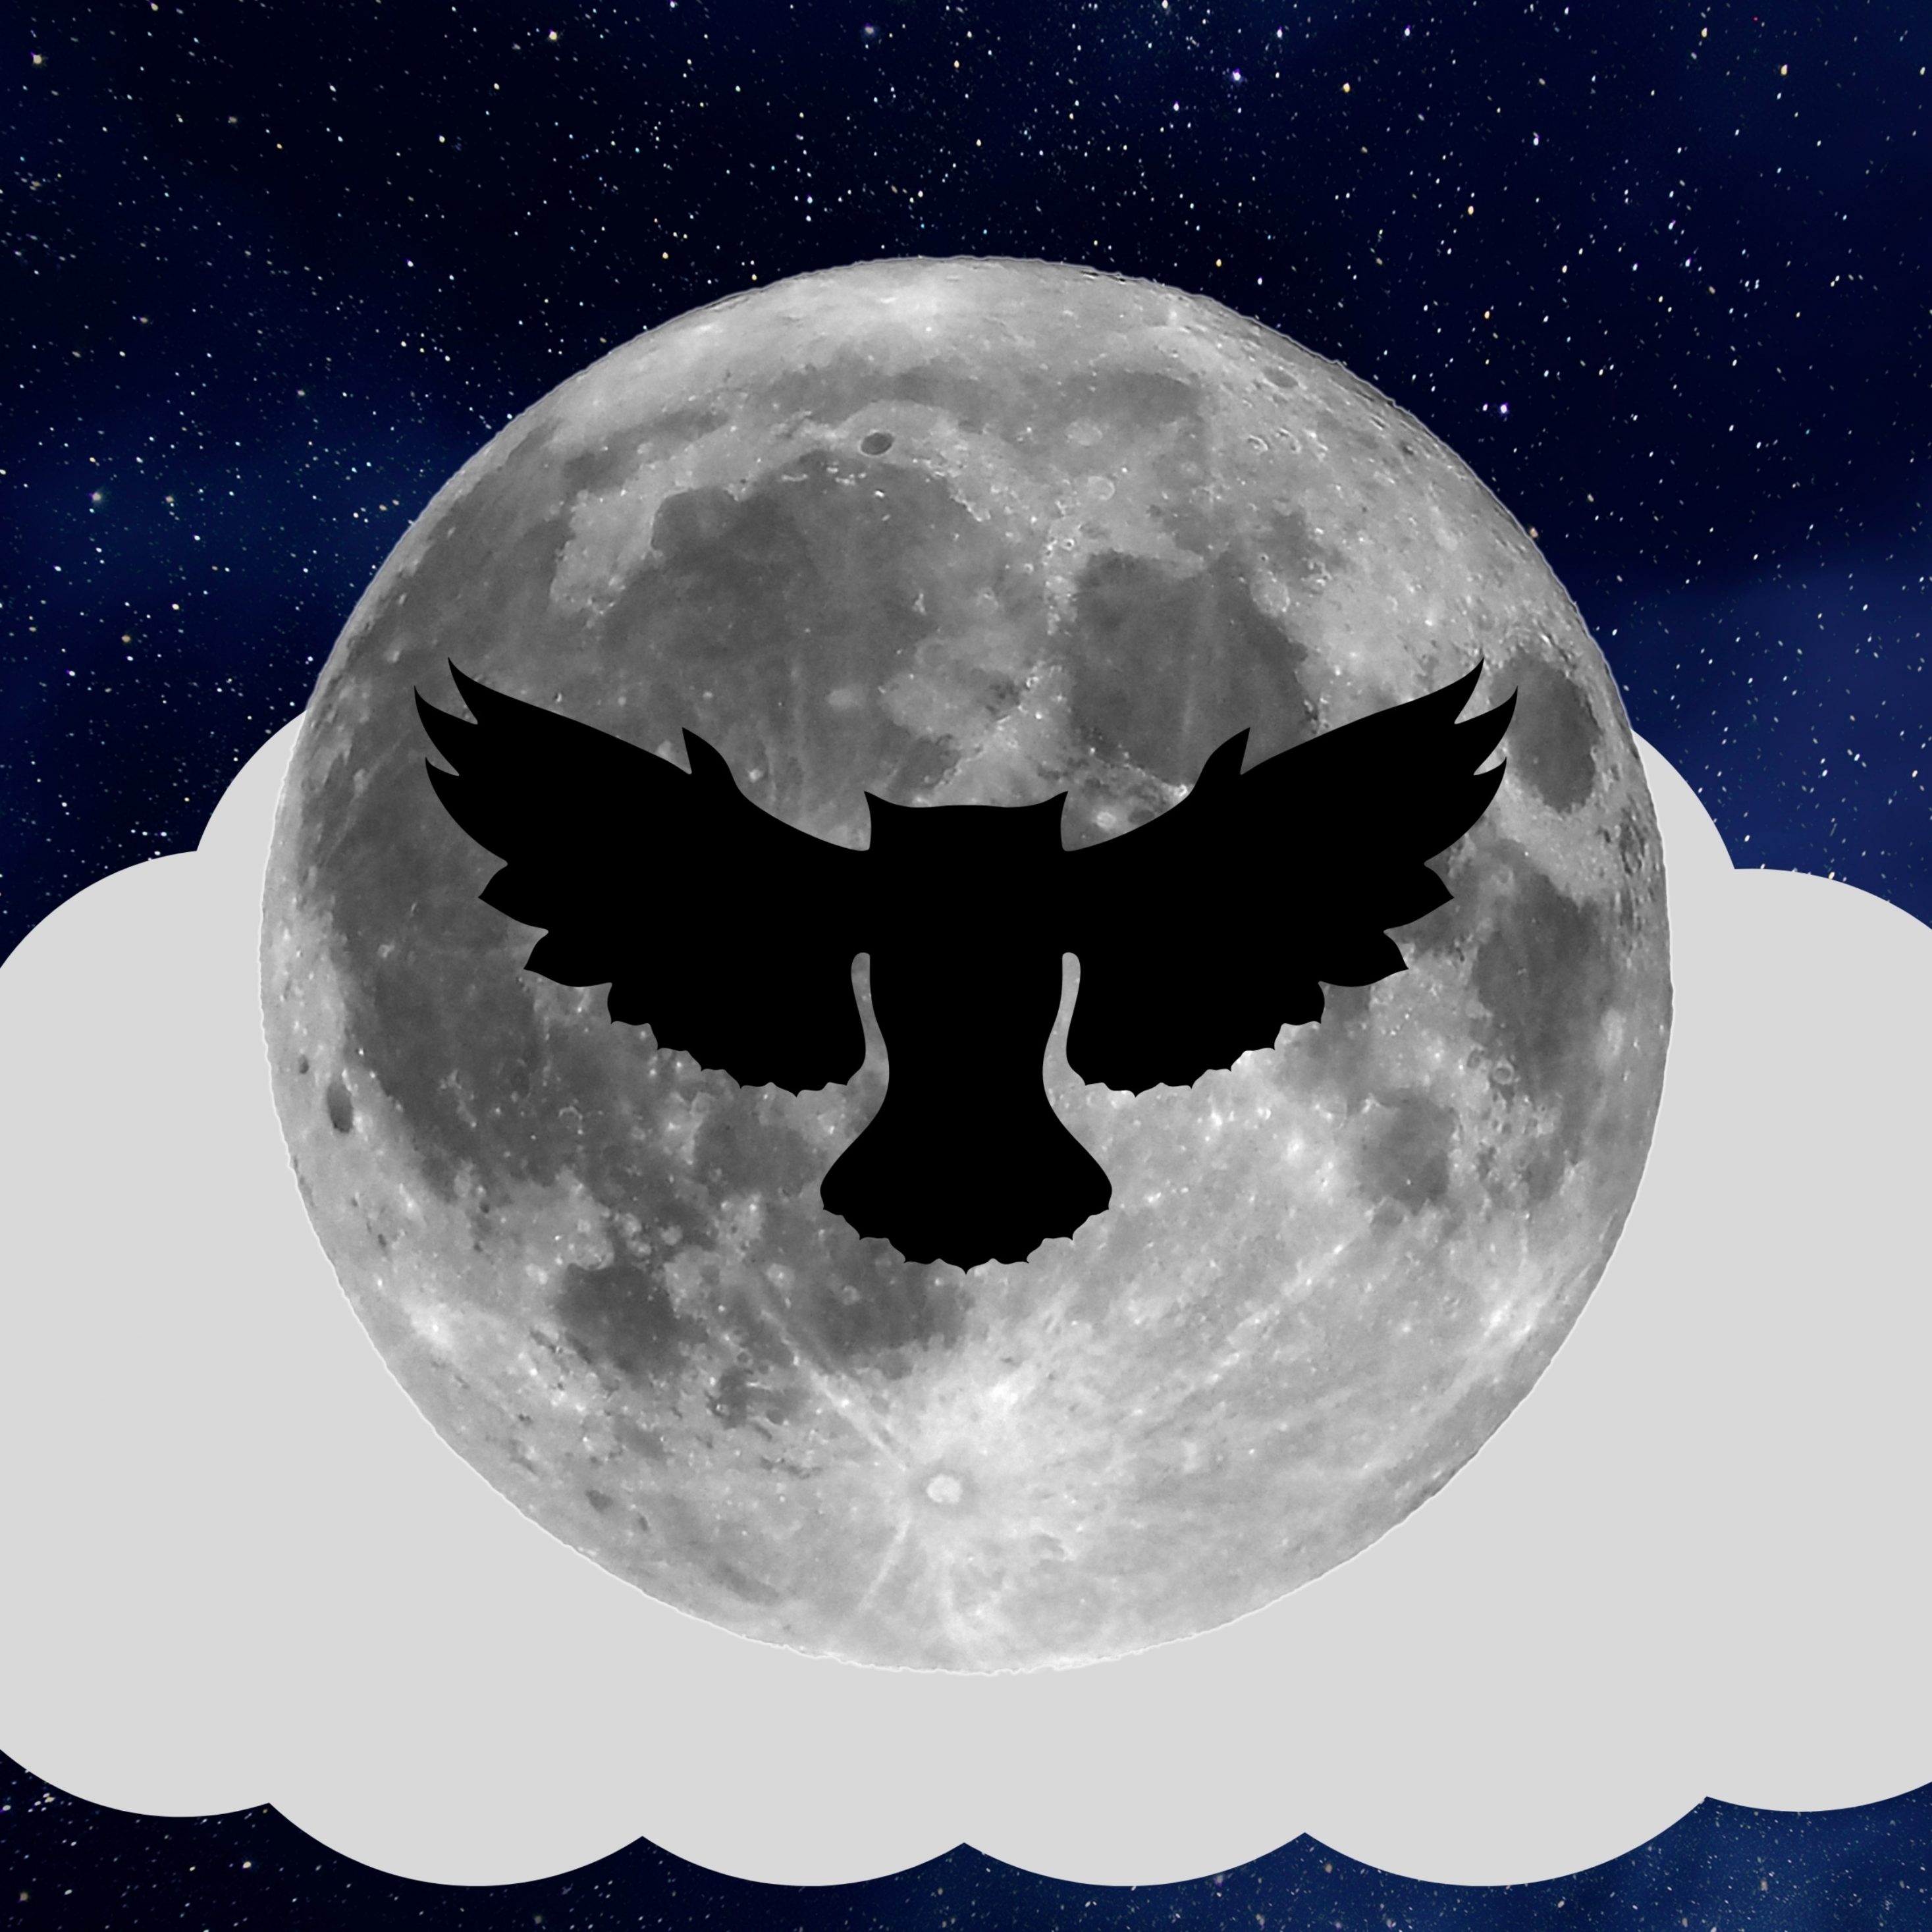 2934x2934 iOS iPad wallpaper 4k Night Owl Full Moon iPad Wallpaper 2934x2934 pixels resolution